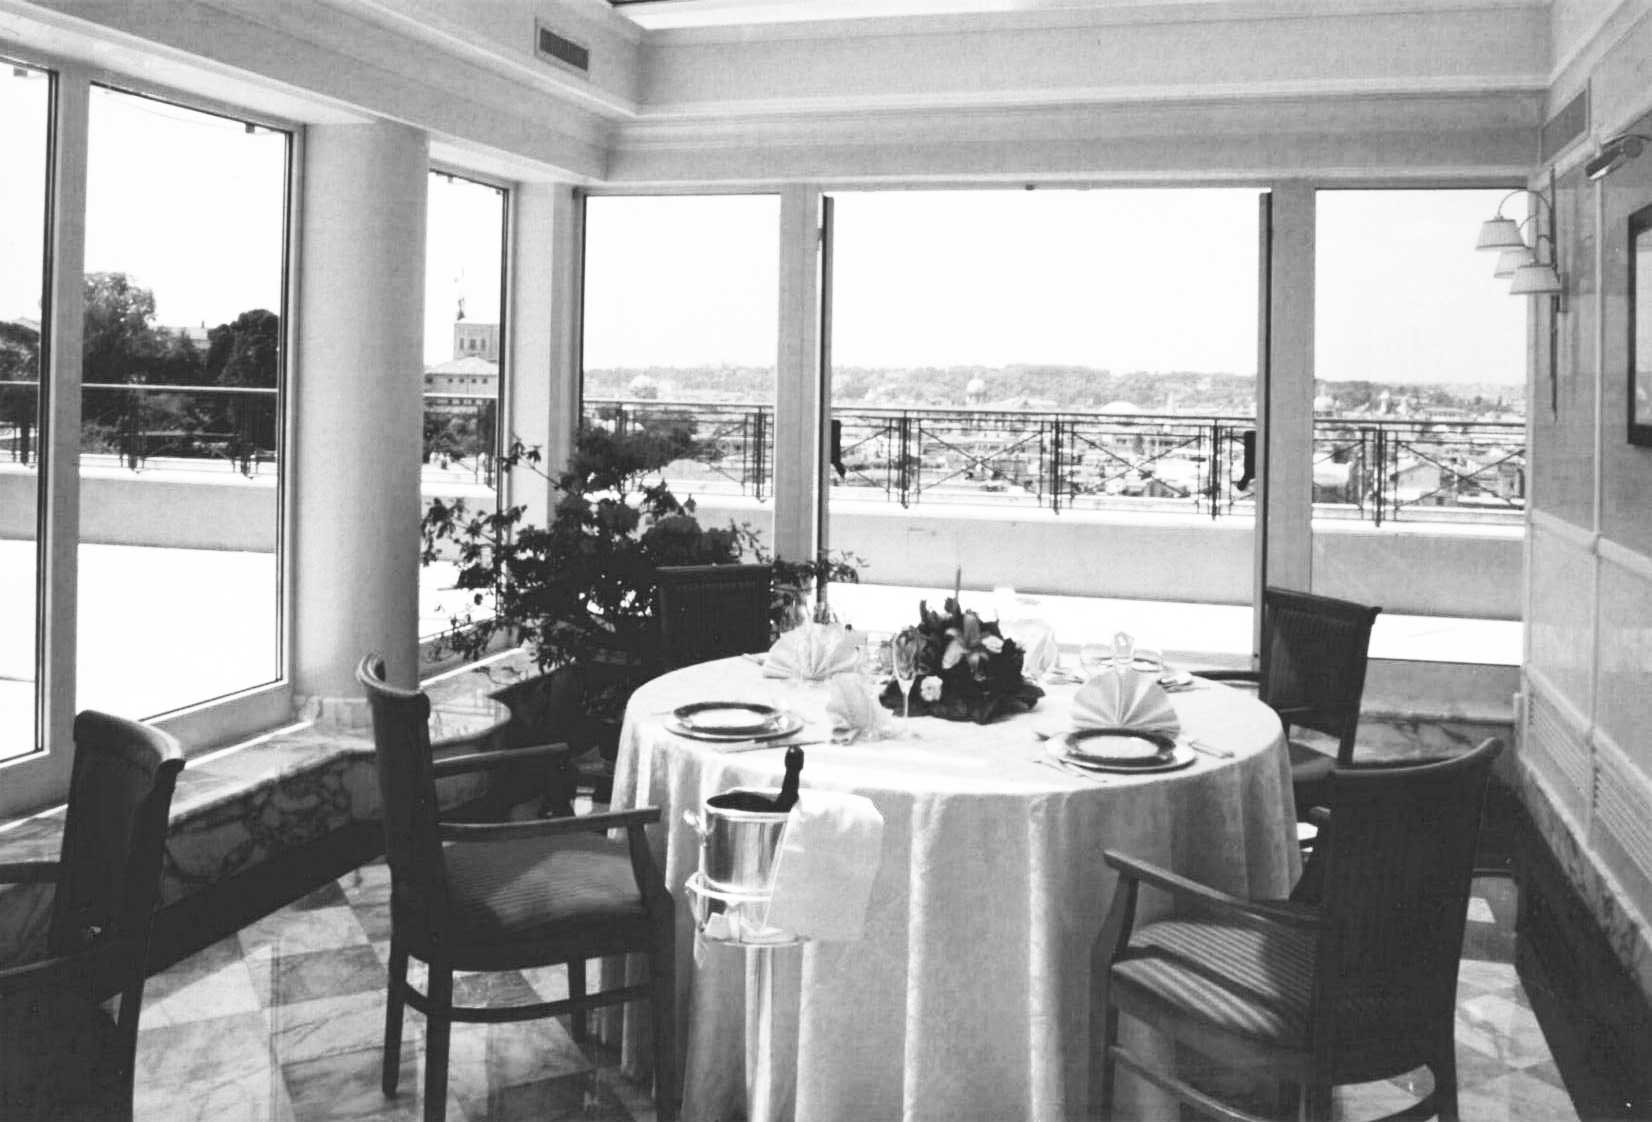 26 - Ristrutturazione Hotel Bernini Bristol, Roma, per SINA SpA - Vista interna del roof garden